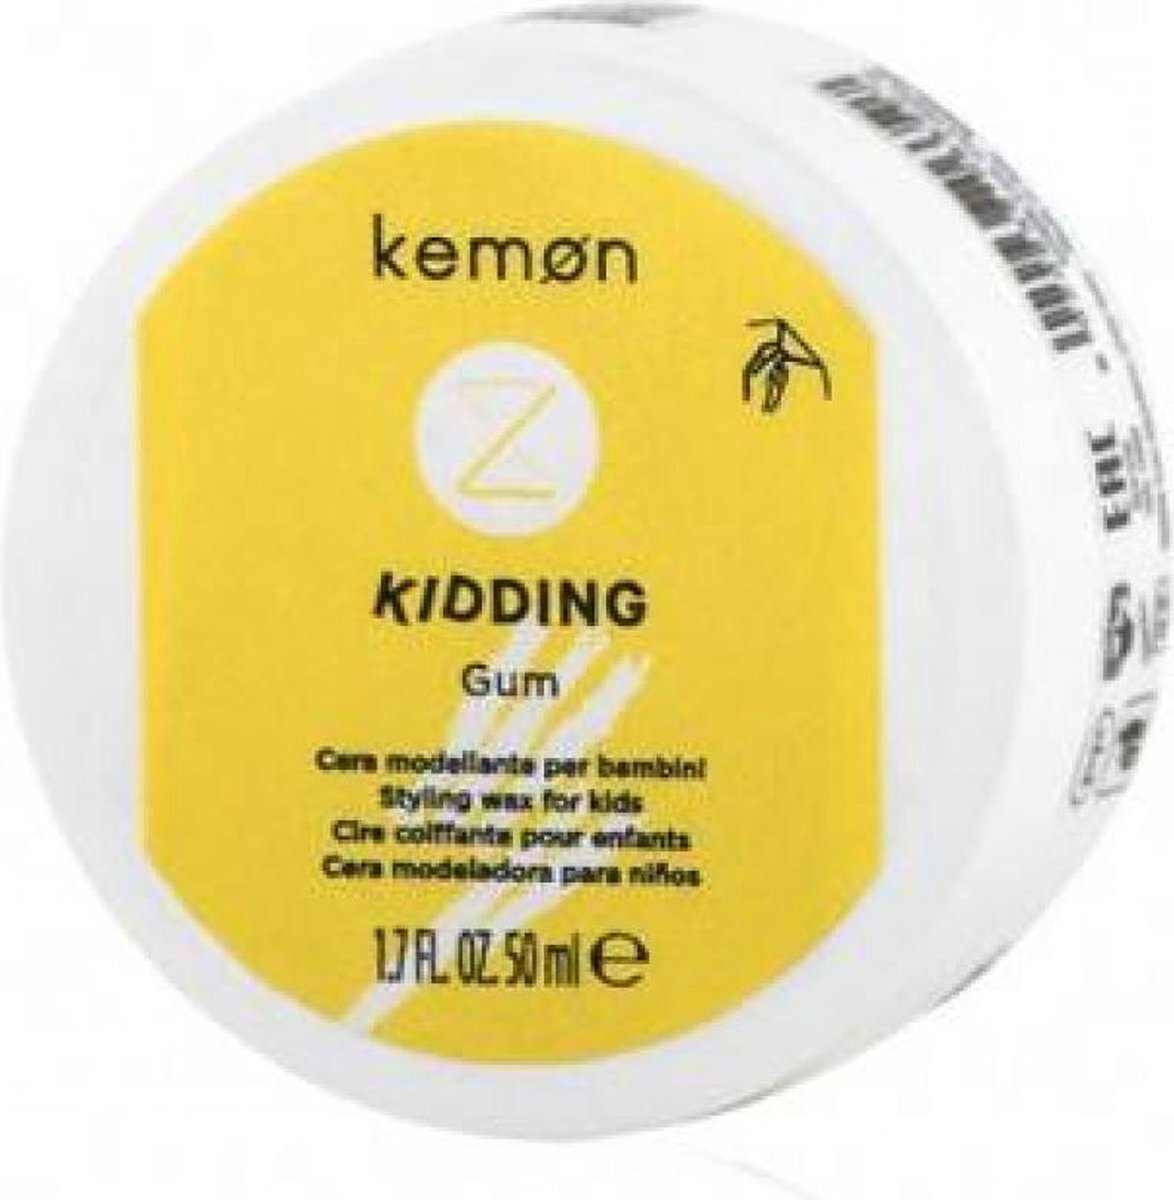 Kemon Liding Kidding Gum Haarwax voor gemiddelde grip, styling-wax vrij van gevoelige allergenen, ideaal voor kinderen vanaf 3 jaar, 50 ml